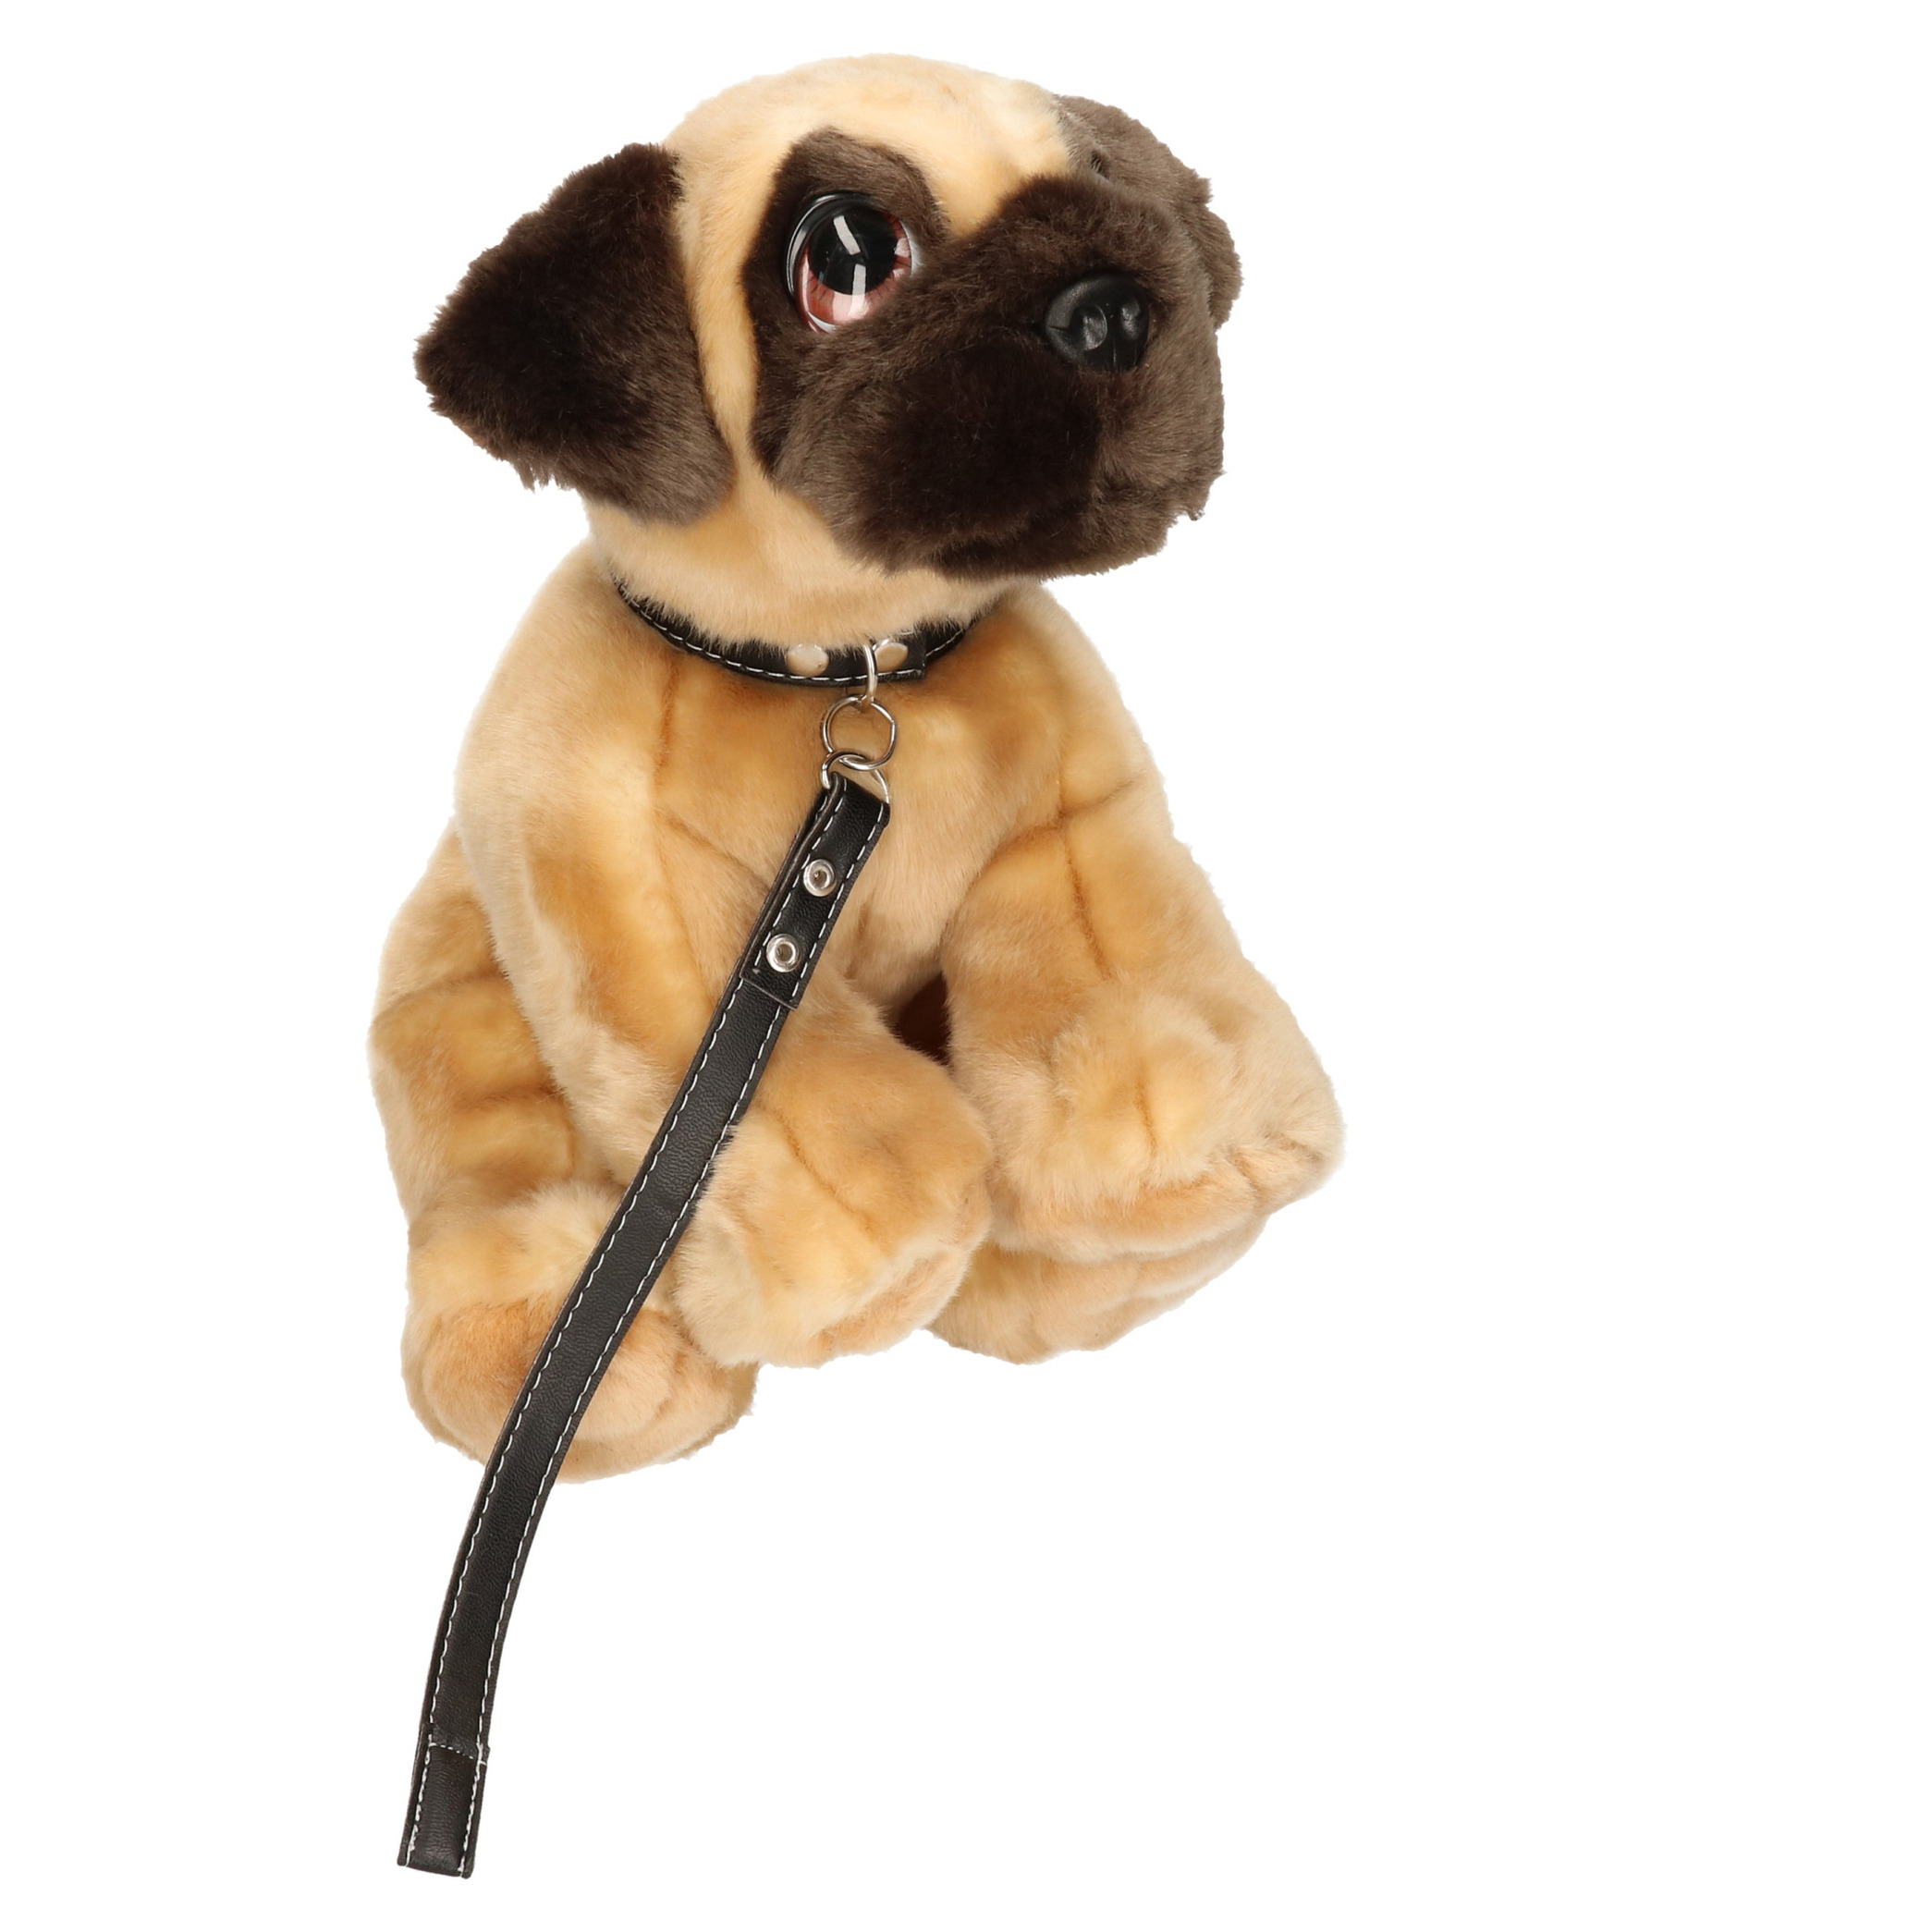 ik ben ziek Onvervangbaar Uitvoerbaar Keel Toys pluche hond bruine Mopshond / Pug met riem knuffel 30cm -  Partyshopper Dieren knuffels winkel